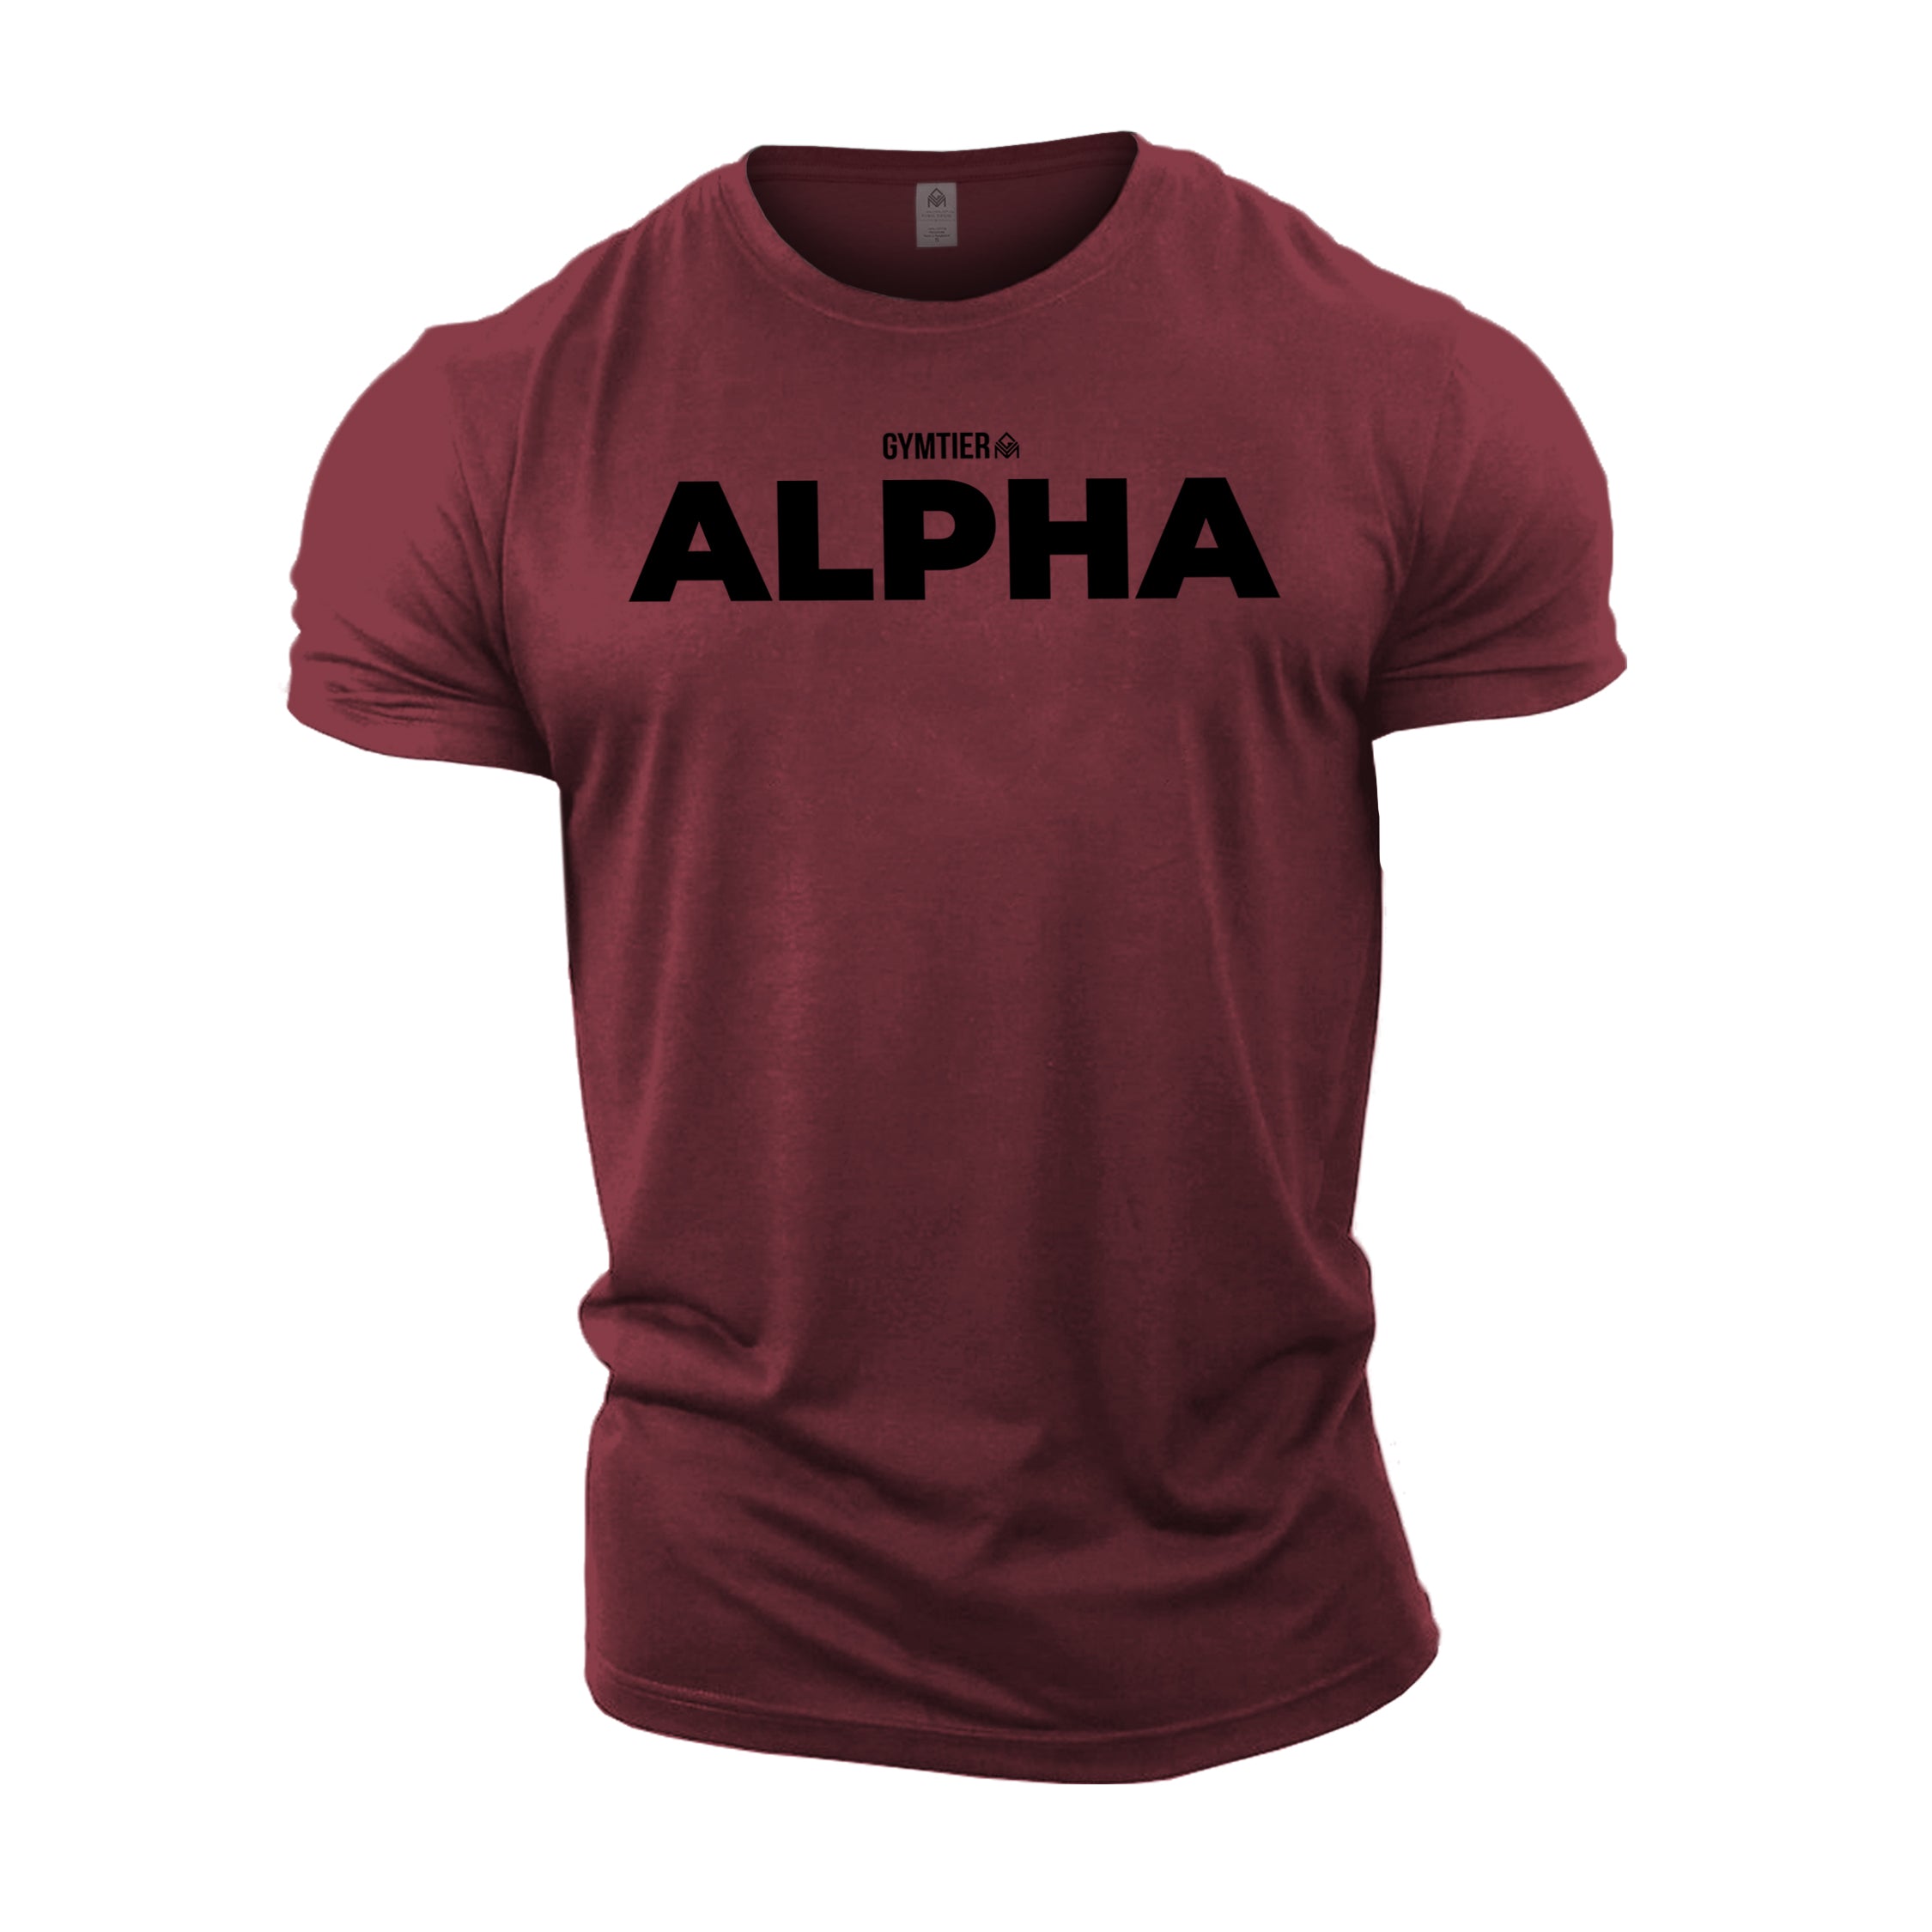 GYMTIER Alpha T-Shirt